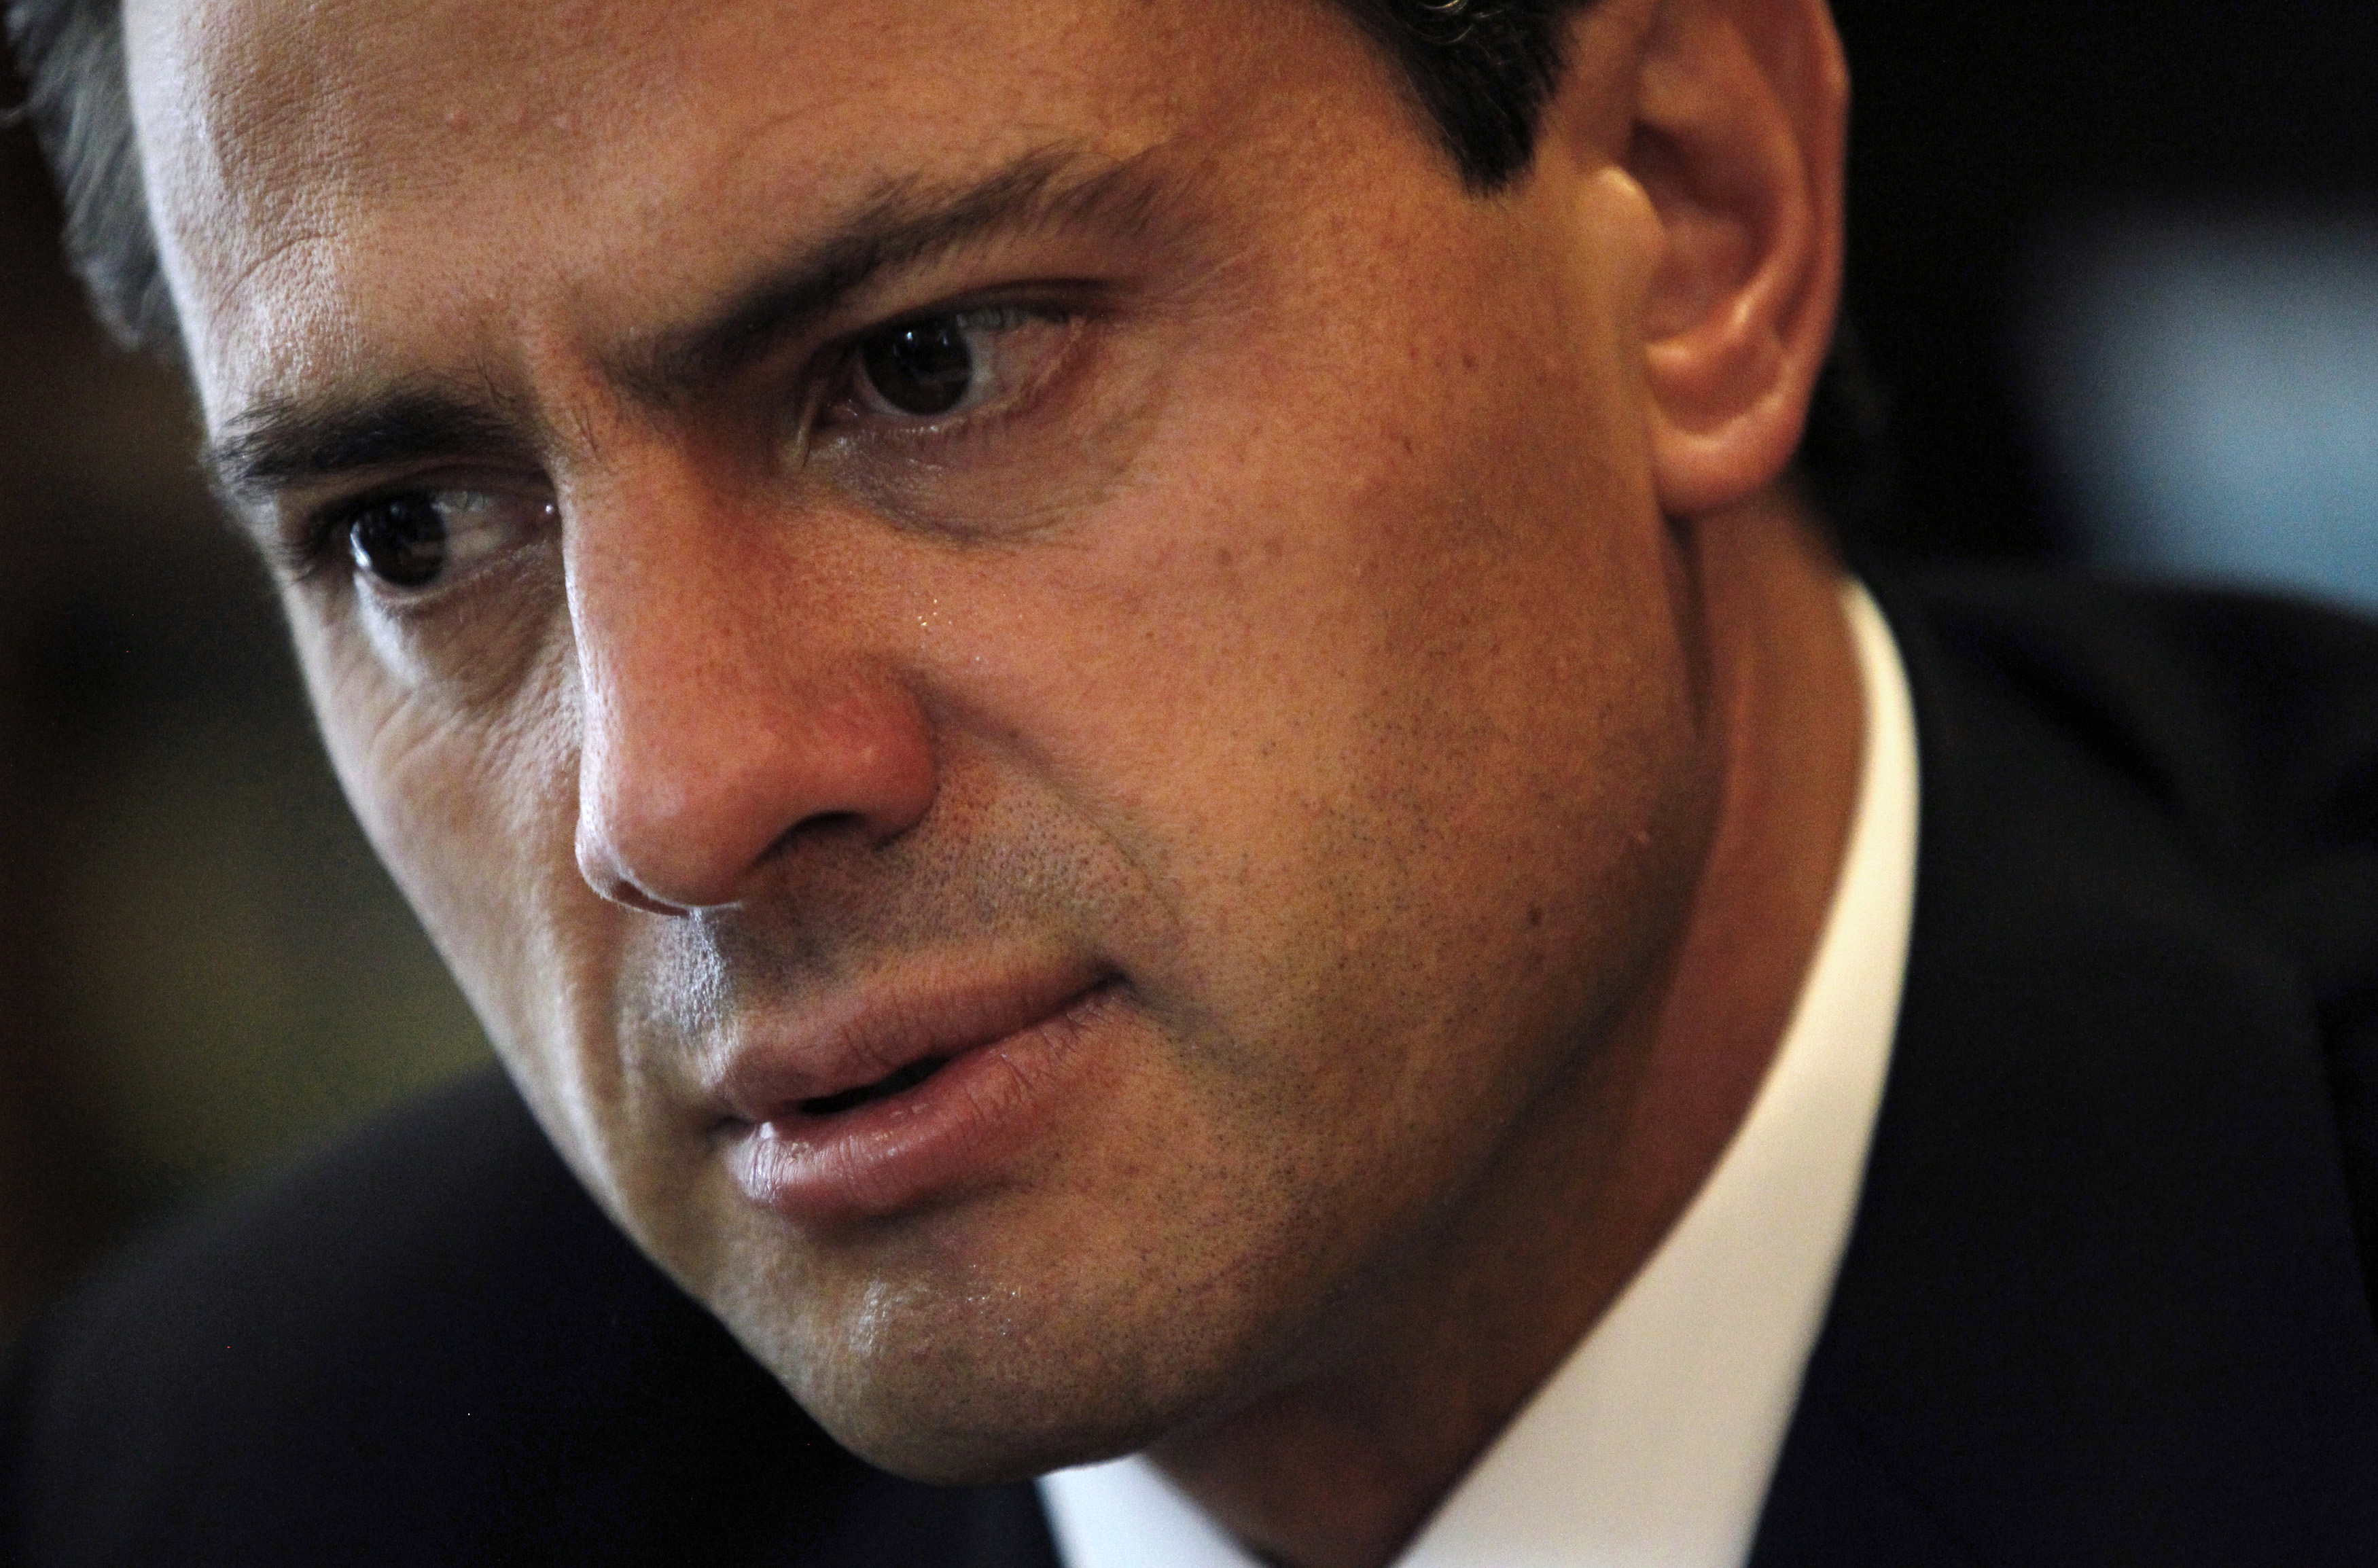 México: la fuerte irritación en los ojos que sufren Peña Nieto y otros altos funcionarios